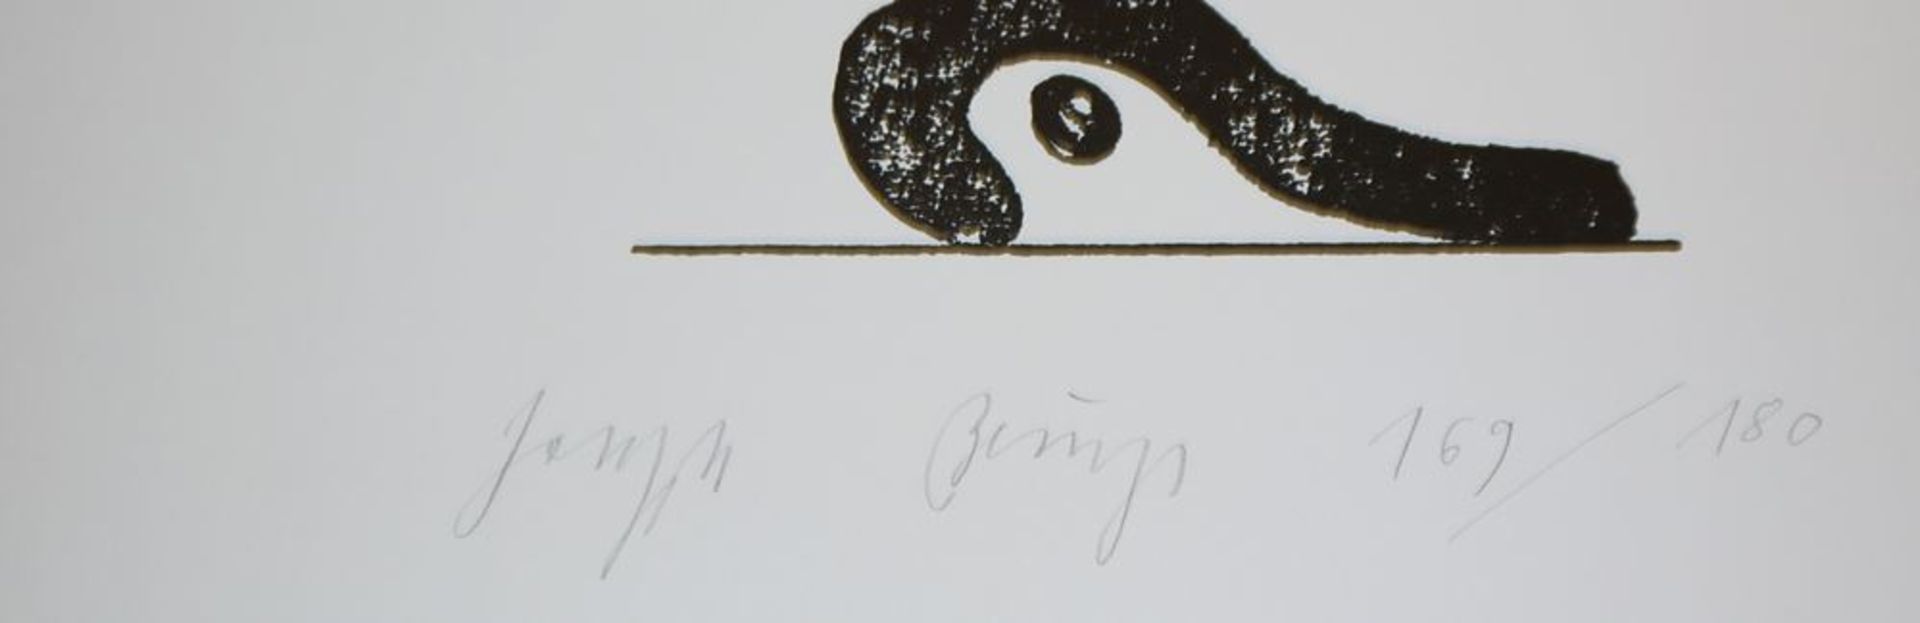 Joseph Beuys, Schmerzraum, signierte Serigraphie von 1984 - Image 2 of 2